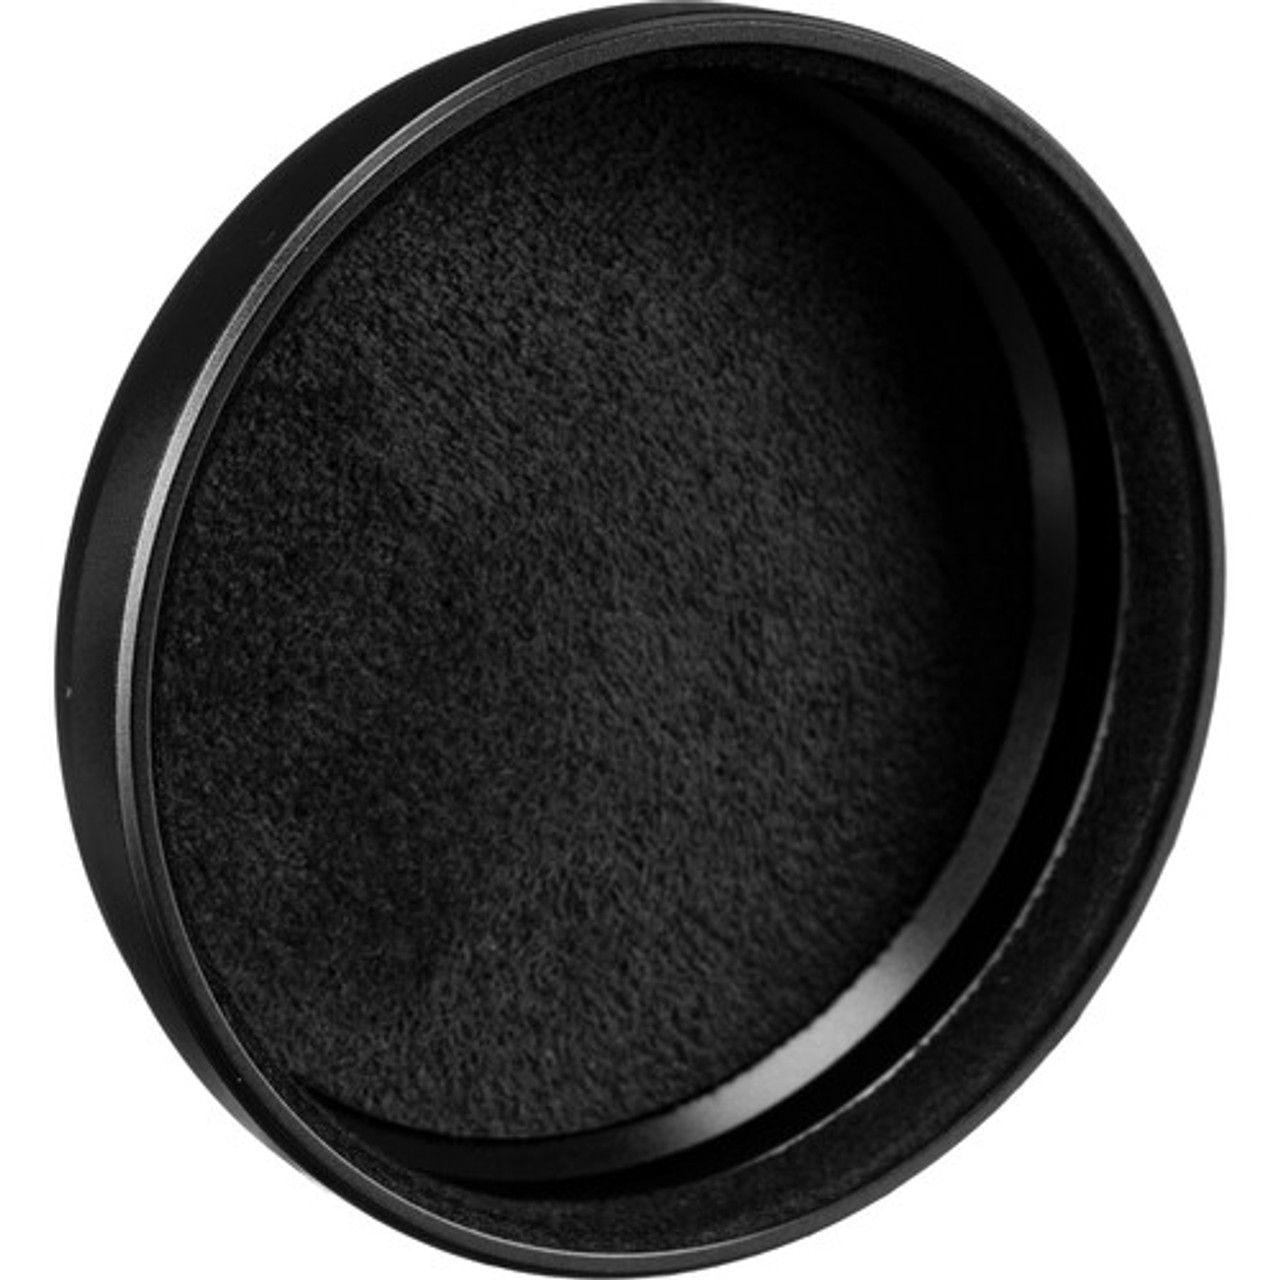 FUJIFILM X100 VI LENS CAP (BLACK)